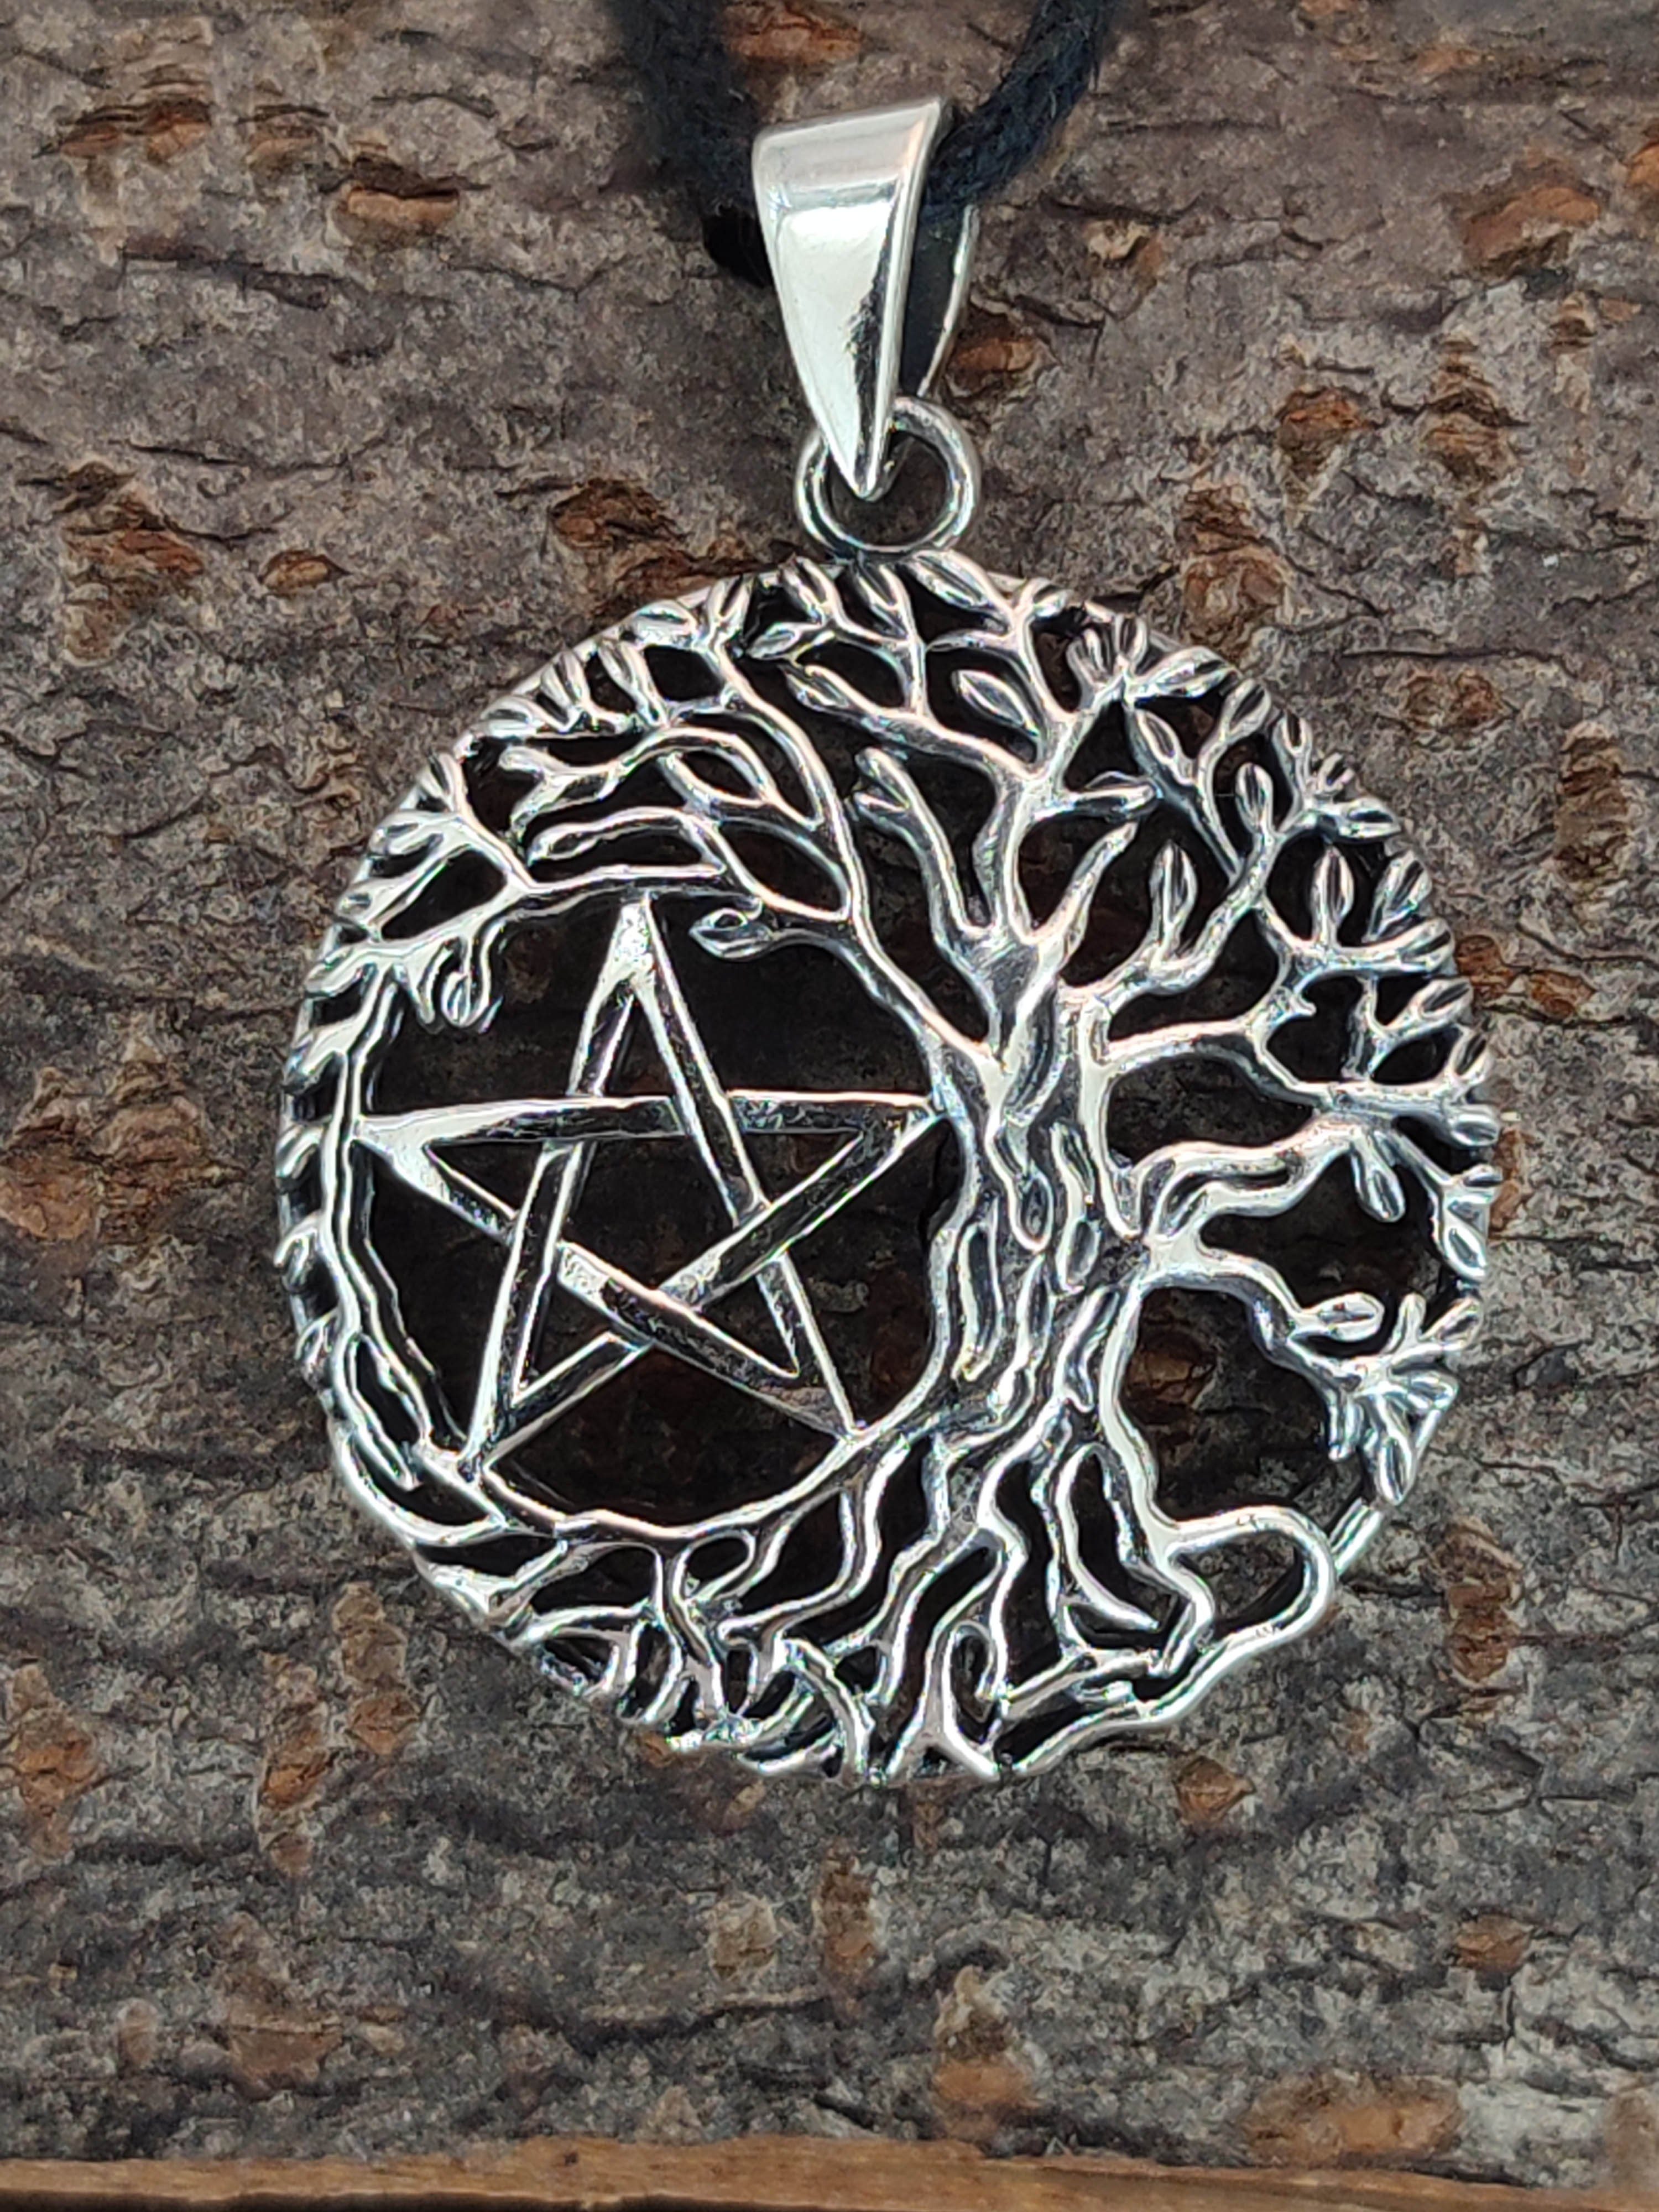 Baum 925 Silber Pentagramm Leather Kettenanhänger Kiss Weltenbaum Yggdrasil Lebensbaum of